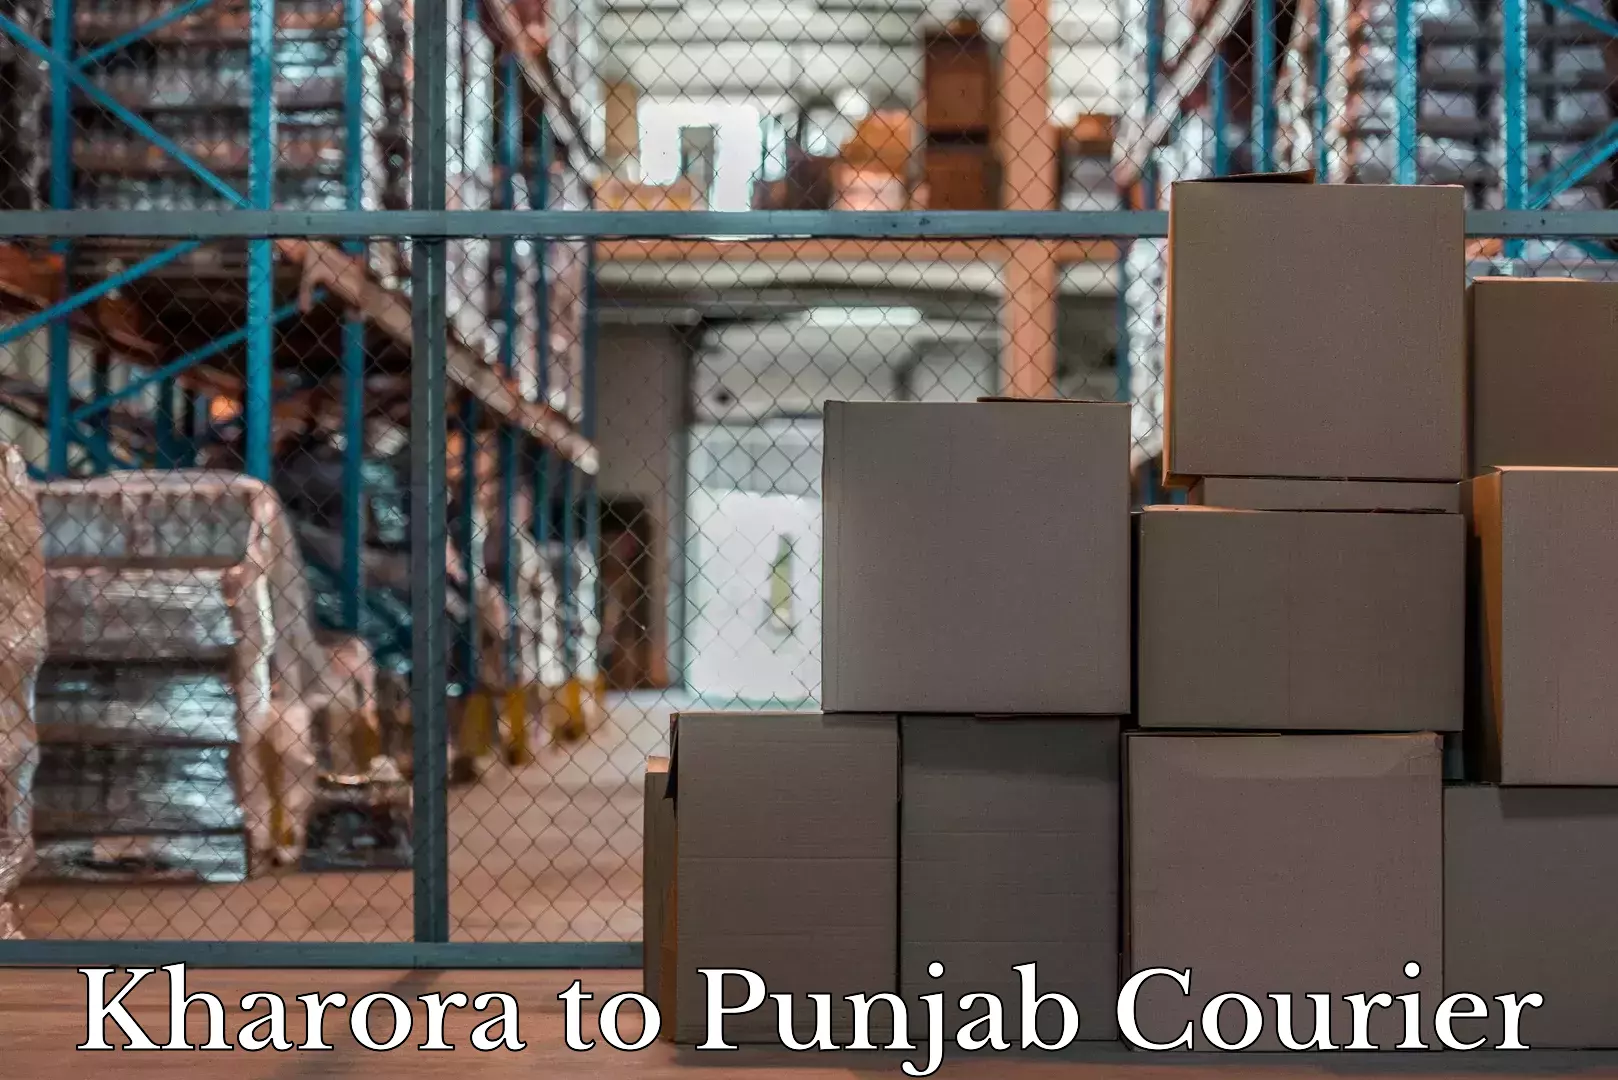 Luggage dispatch service Kharora to Punjab